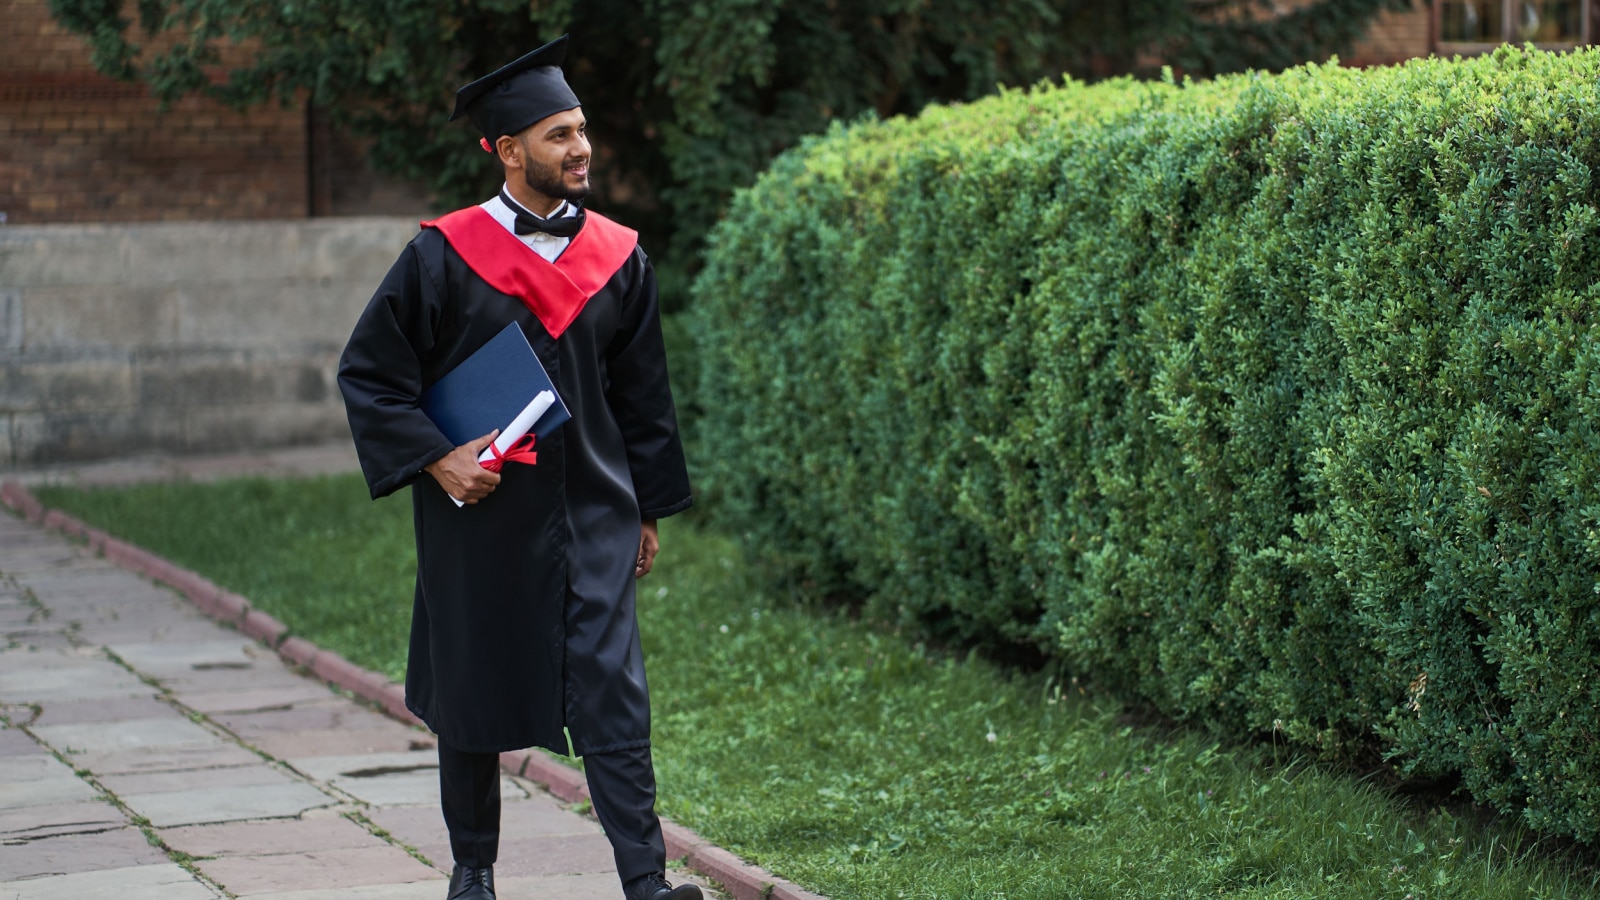 Học sinh đẹp trai người Ấn Độ đi bộ trên khuôn viên trường đại học trong bộ áo choàng tốt nghiệp và bằng cấp, không gian để sao chép